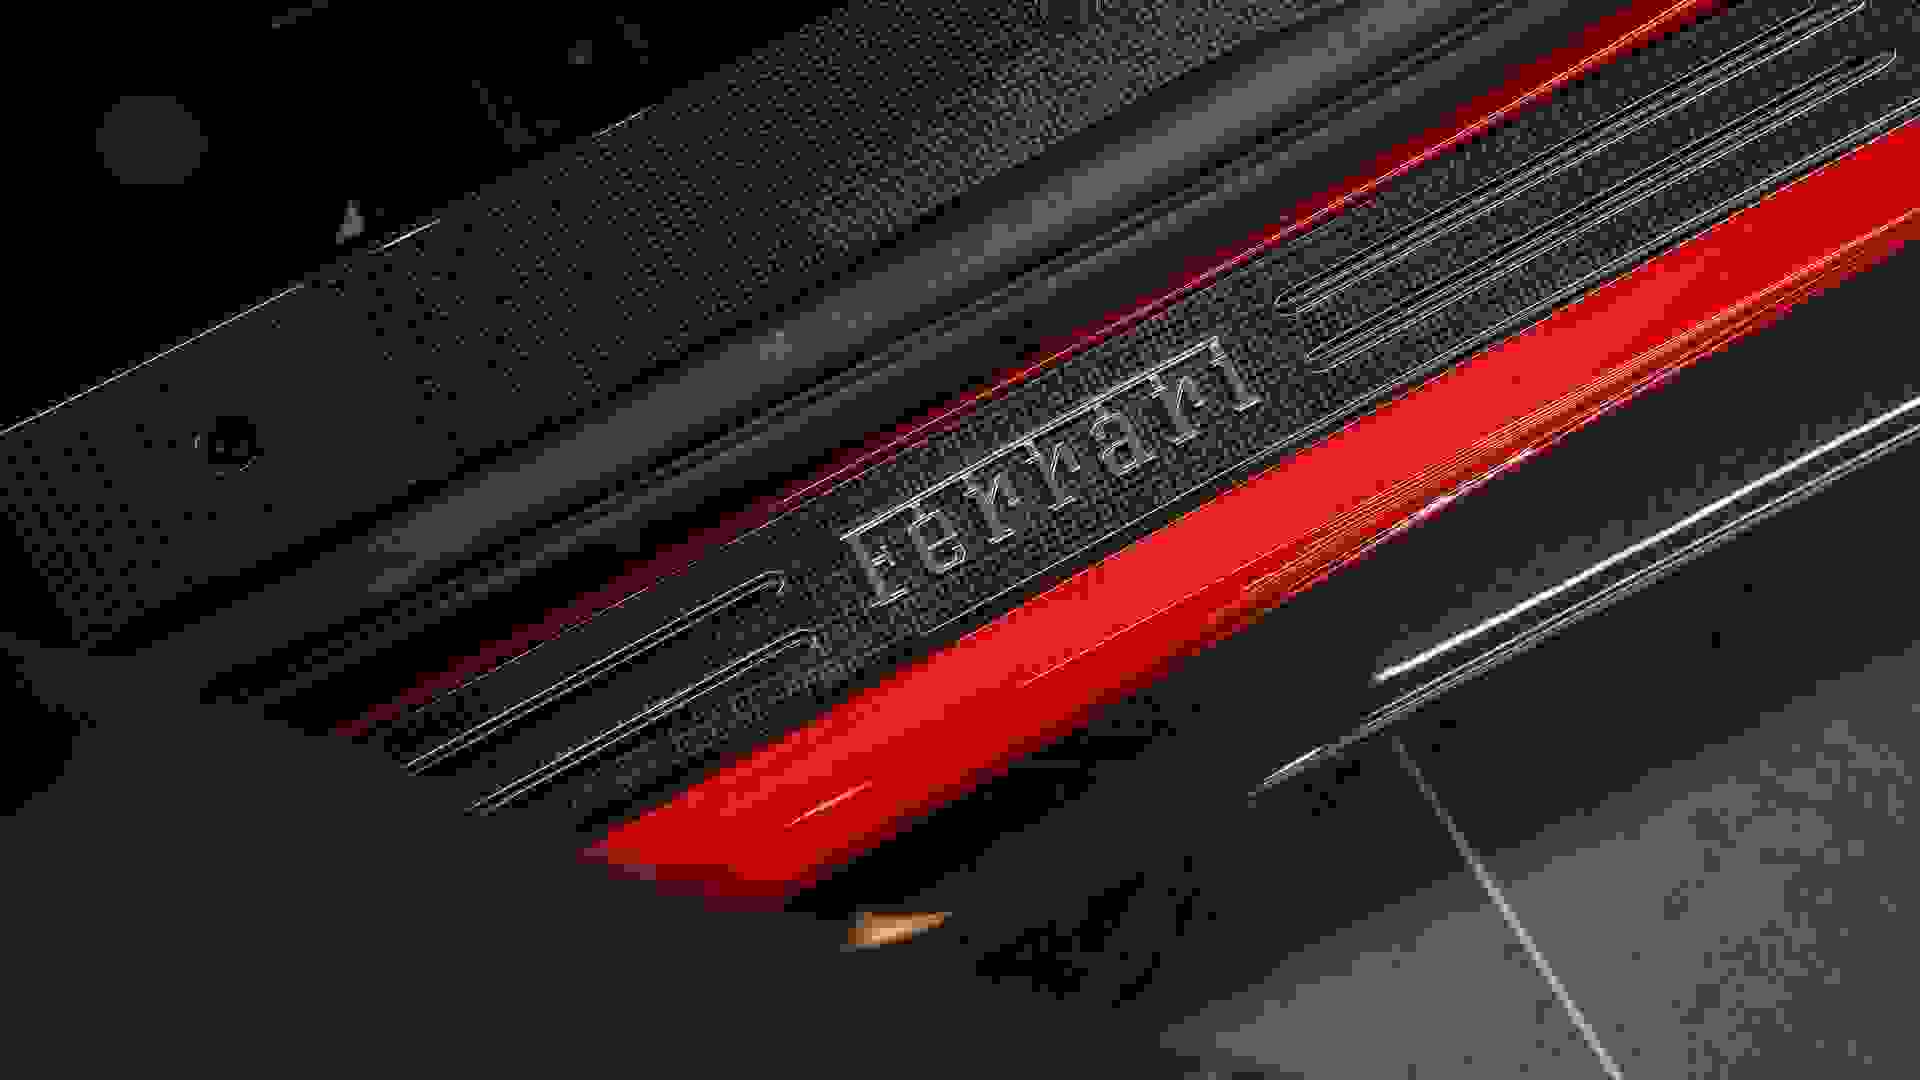 Ferrari 488 Photo 0738e380-74d8-4f1a-a148-2bf7a59b8d4c.jpg